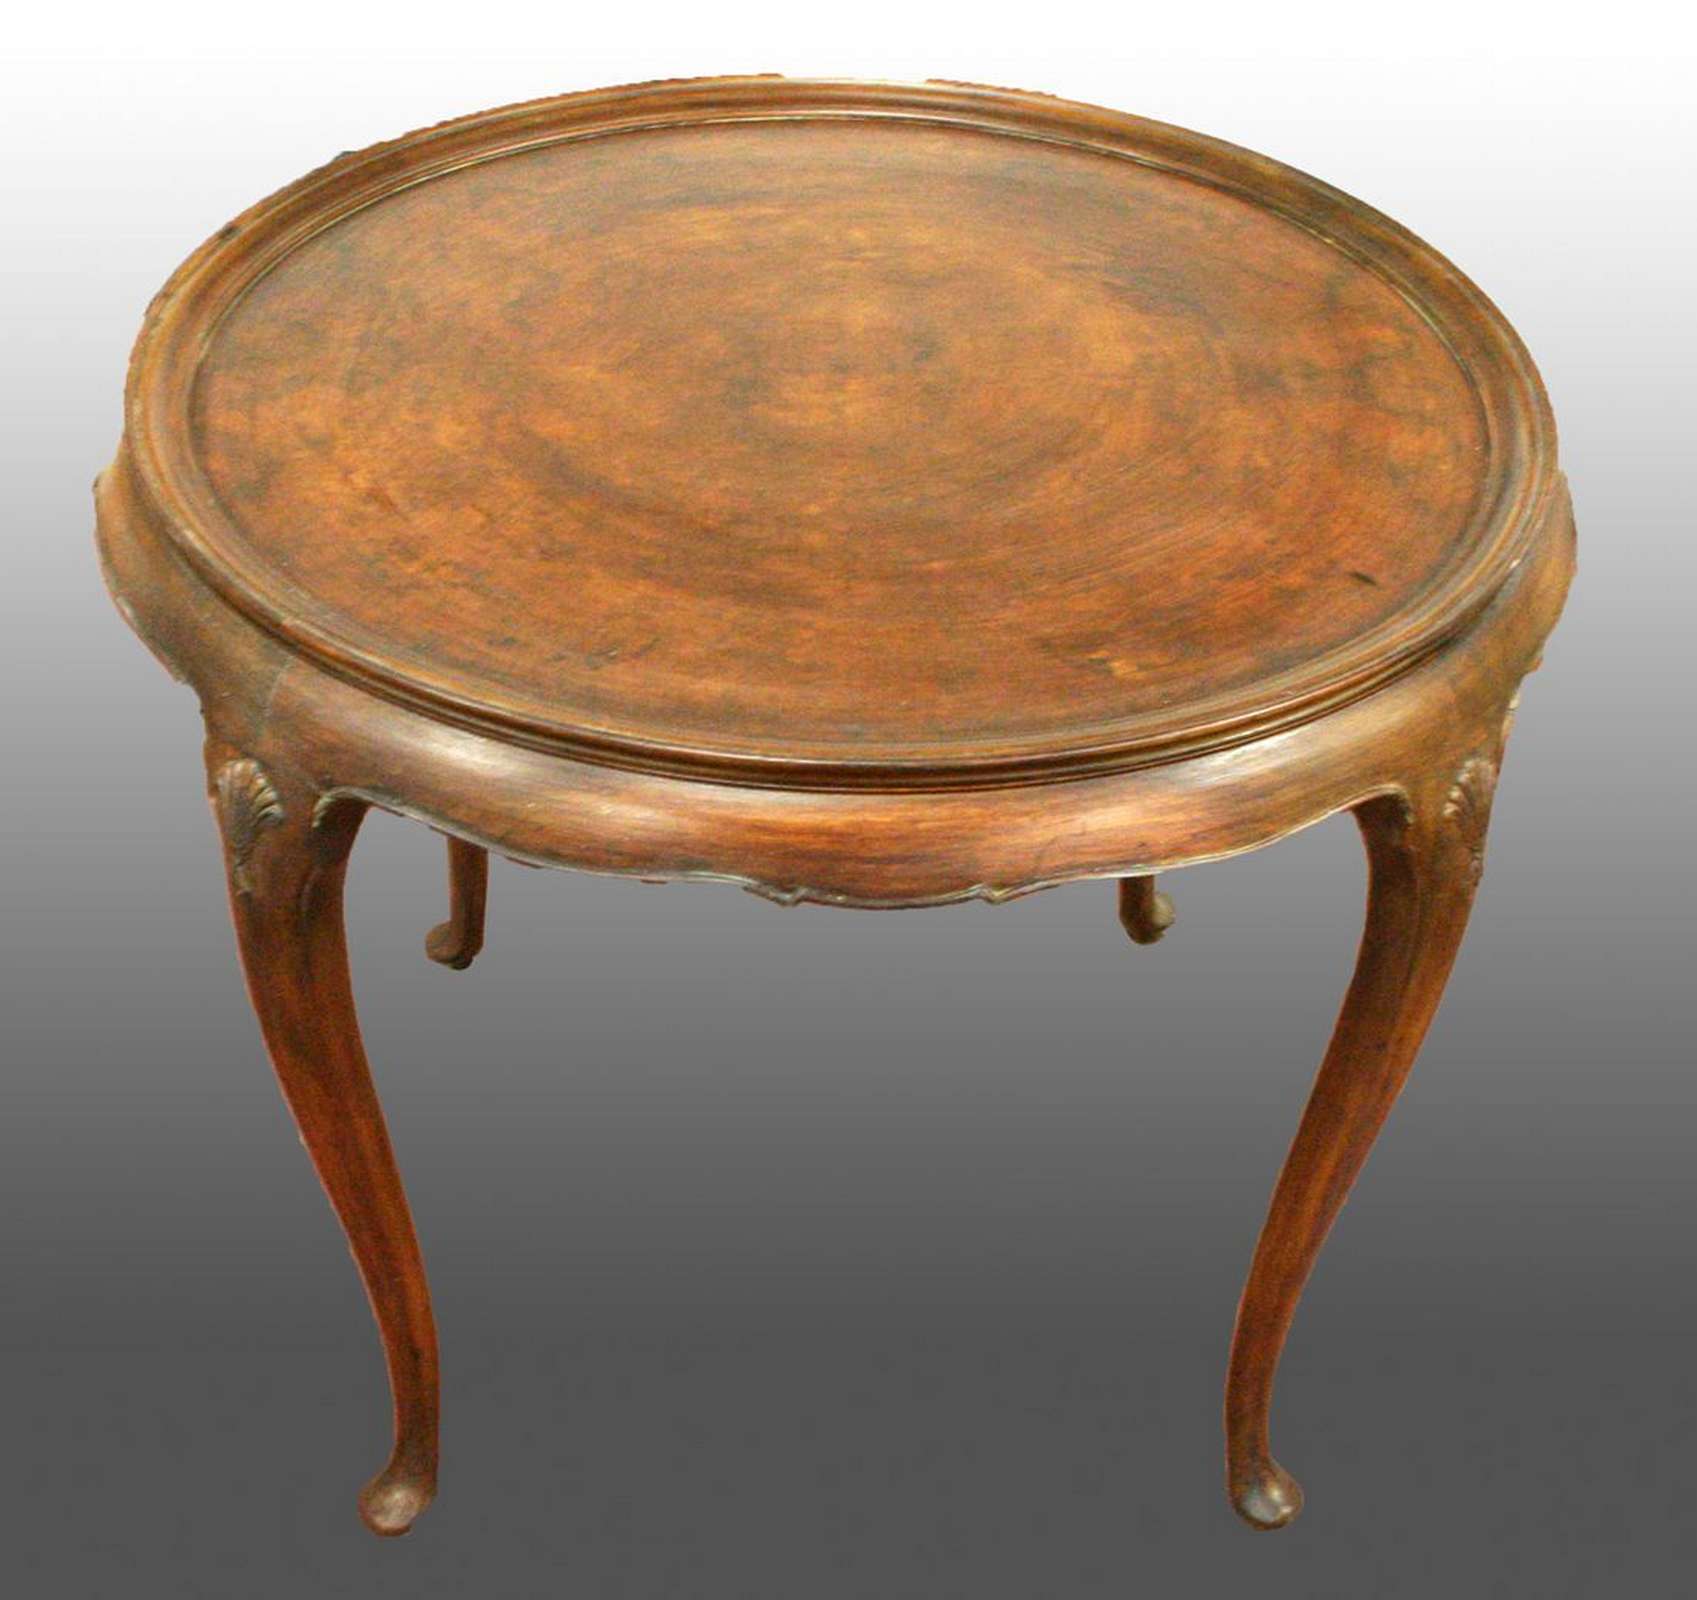 Antico tavolo in legno. Epoca 1800. - Tavoli Antichi - Mobili antichi - Prodotti - Antichità Fiorillo